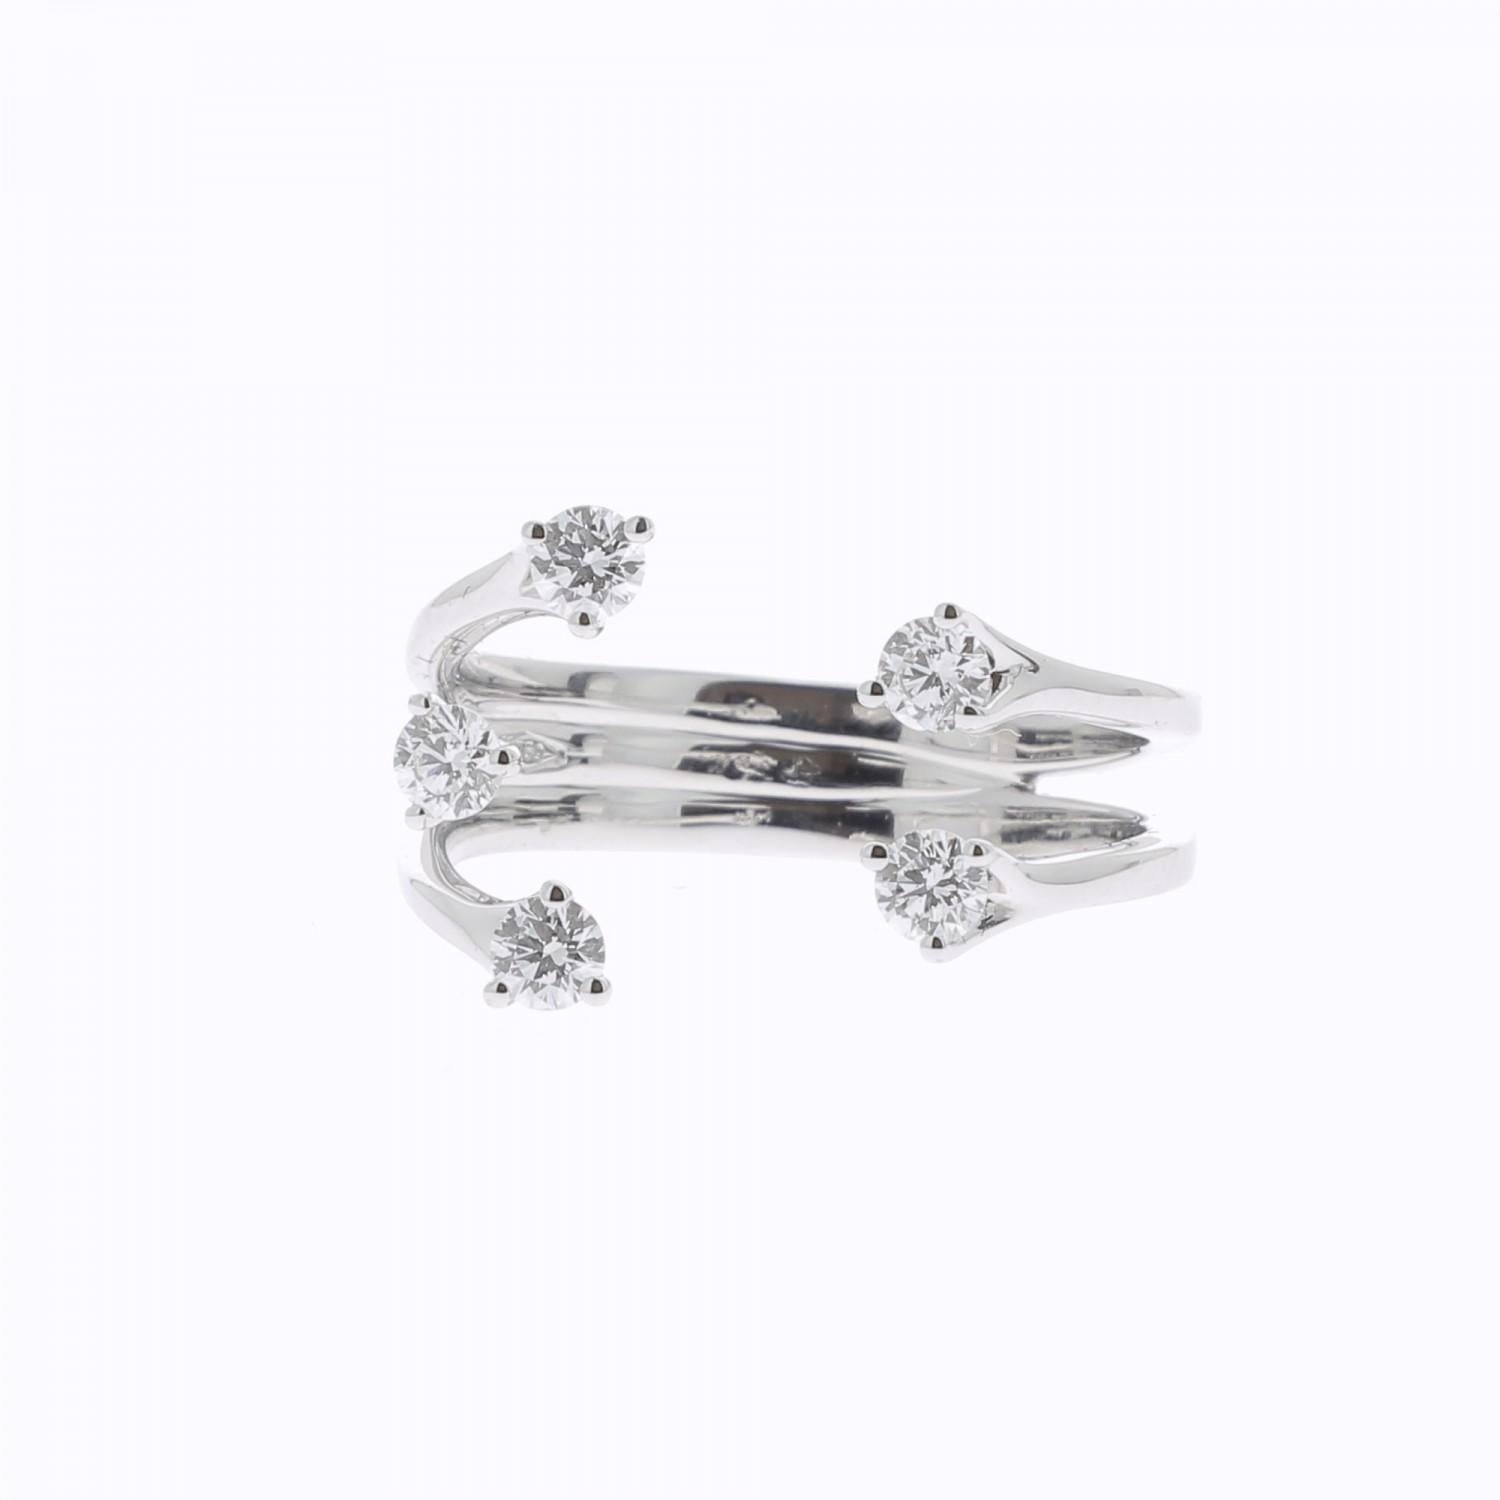 Round Cut 0.48 Carat GVS White Diamond Rings 18 Karat White Gold Fashion Rings